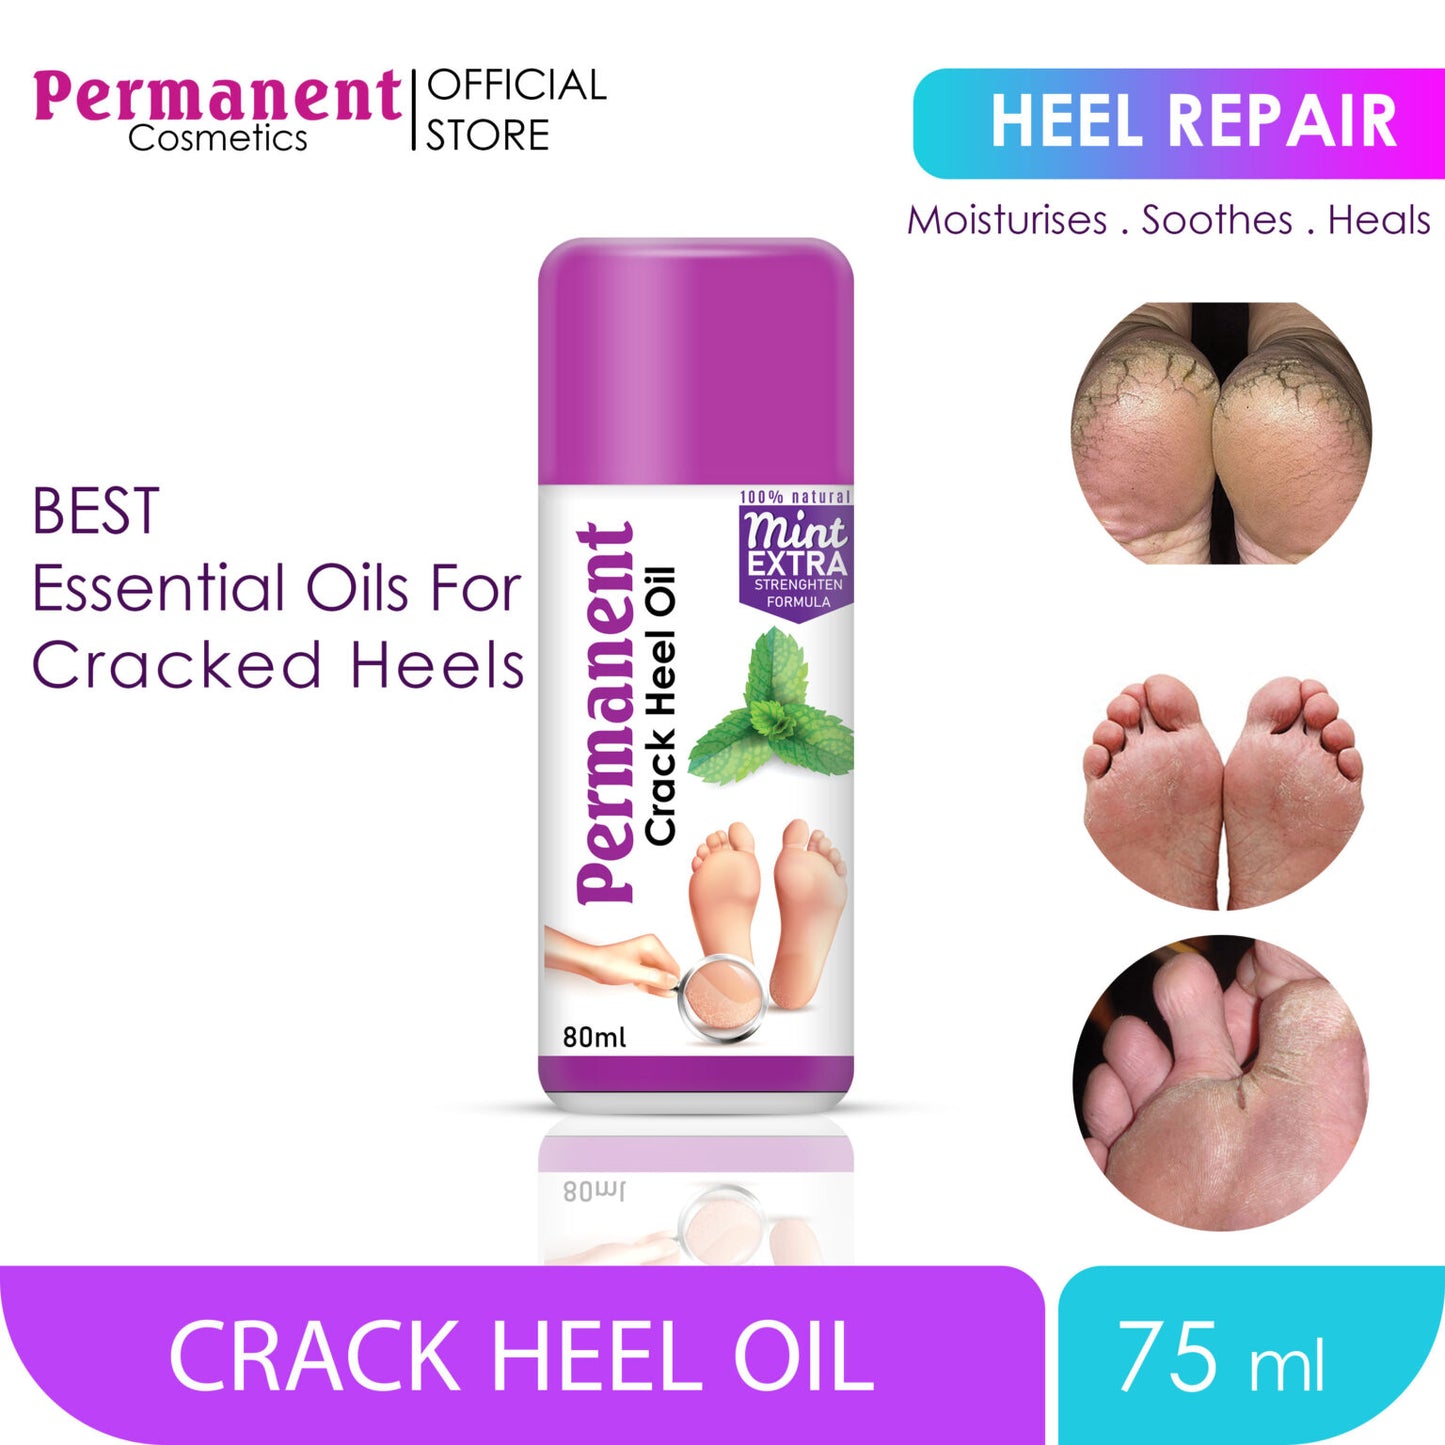 Permanent Cracked Heel Oil